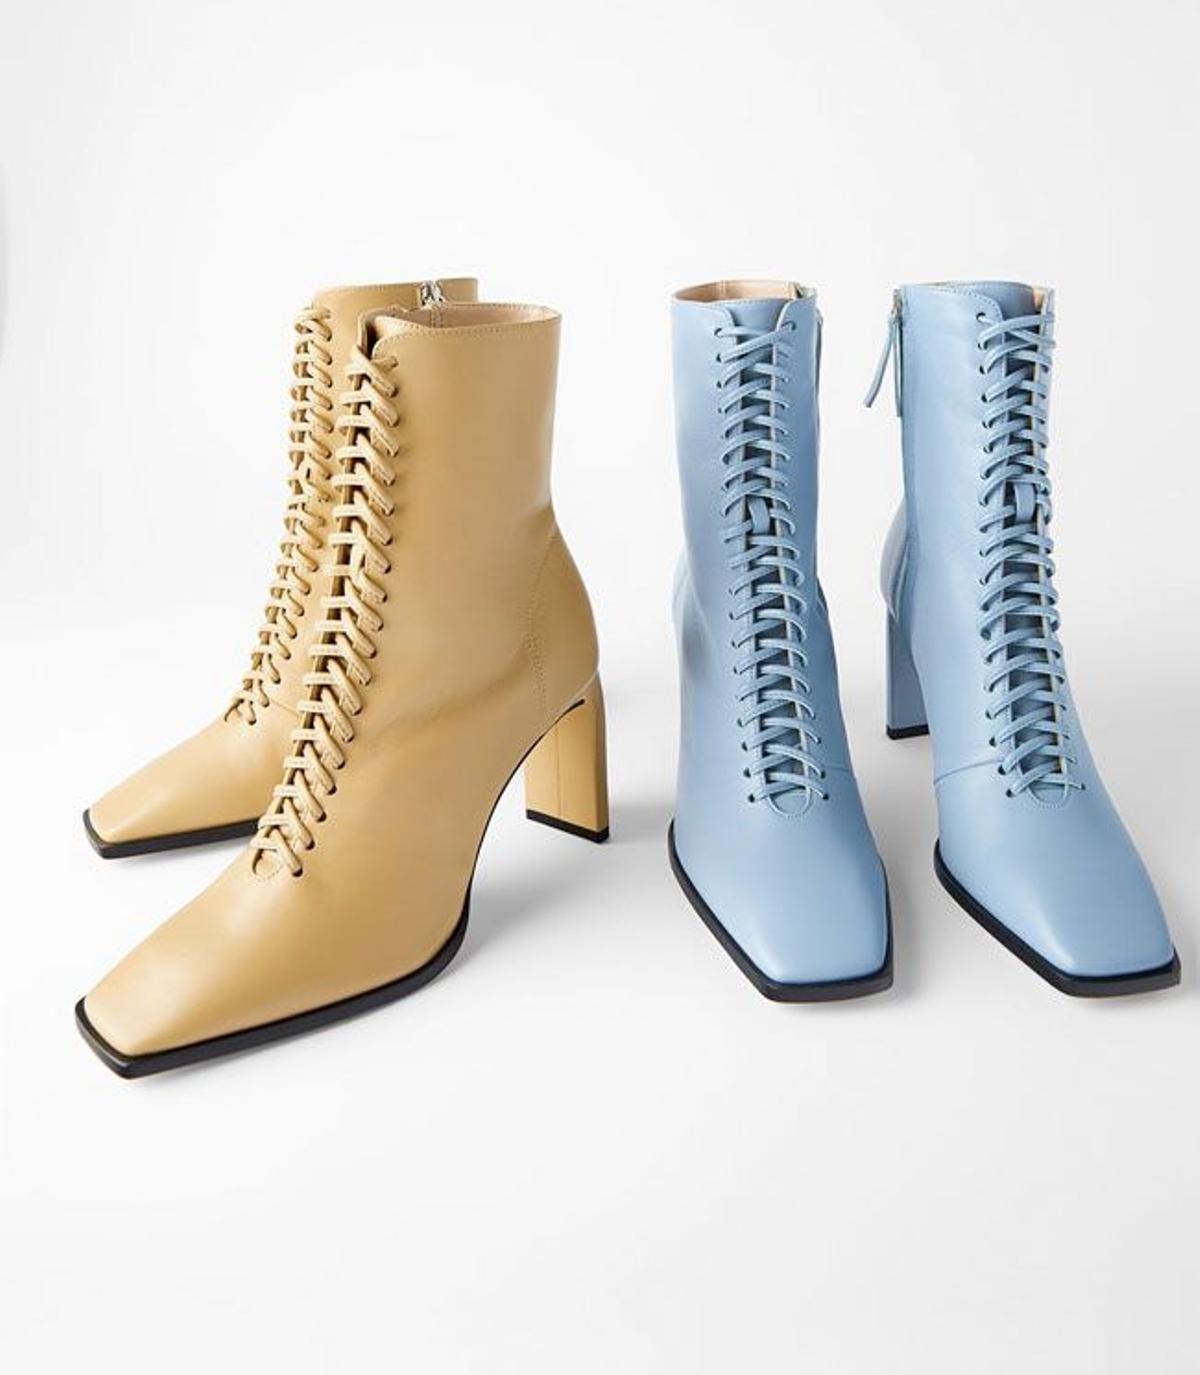 Acordonados por completo y con tacón midi, así son los nuevos botines de Zara que se convertirán en su nuevo 'best seller'